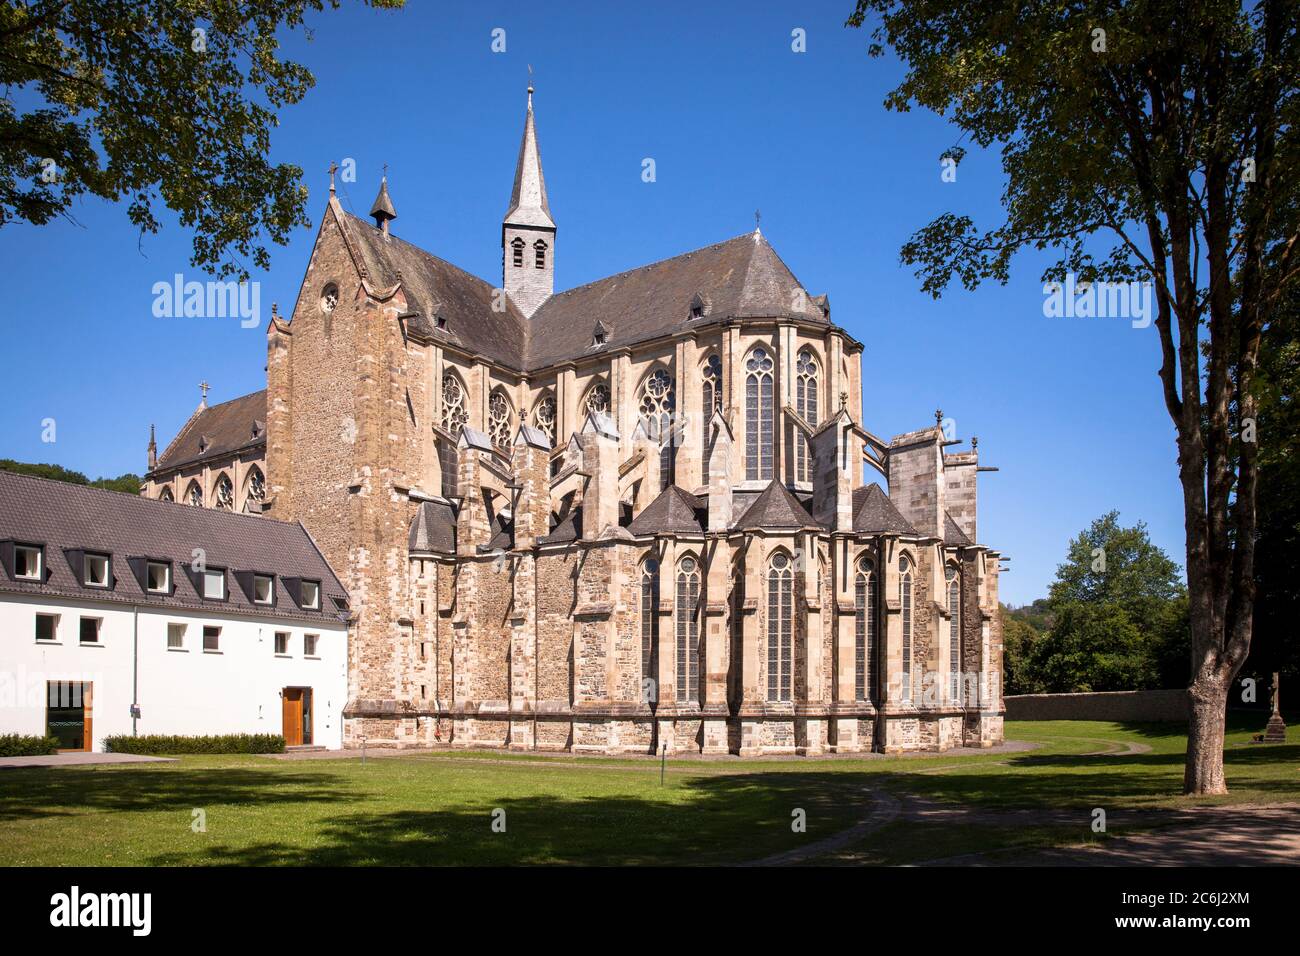 La cattedrale di Altenberg a Odenthal, la chiesa dell'ex abbazia cistercense Altenberg, la regione del Bergisches Land, Nord Reno-Westfalia, Germania. De Foto Stock